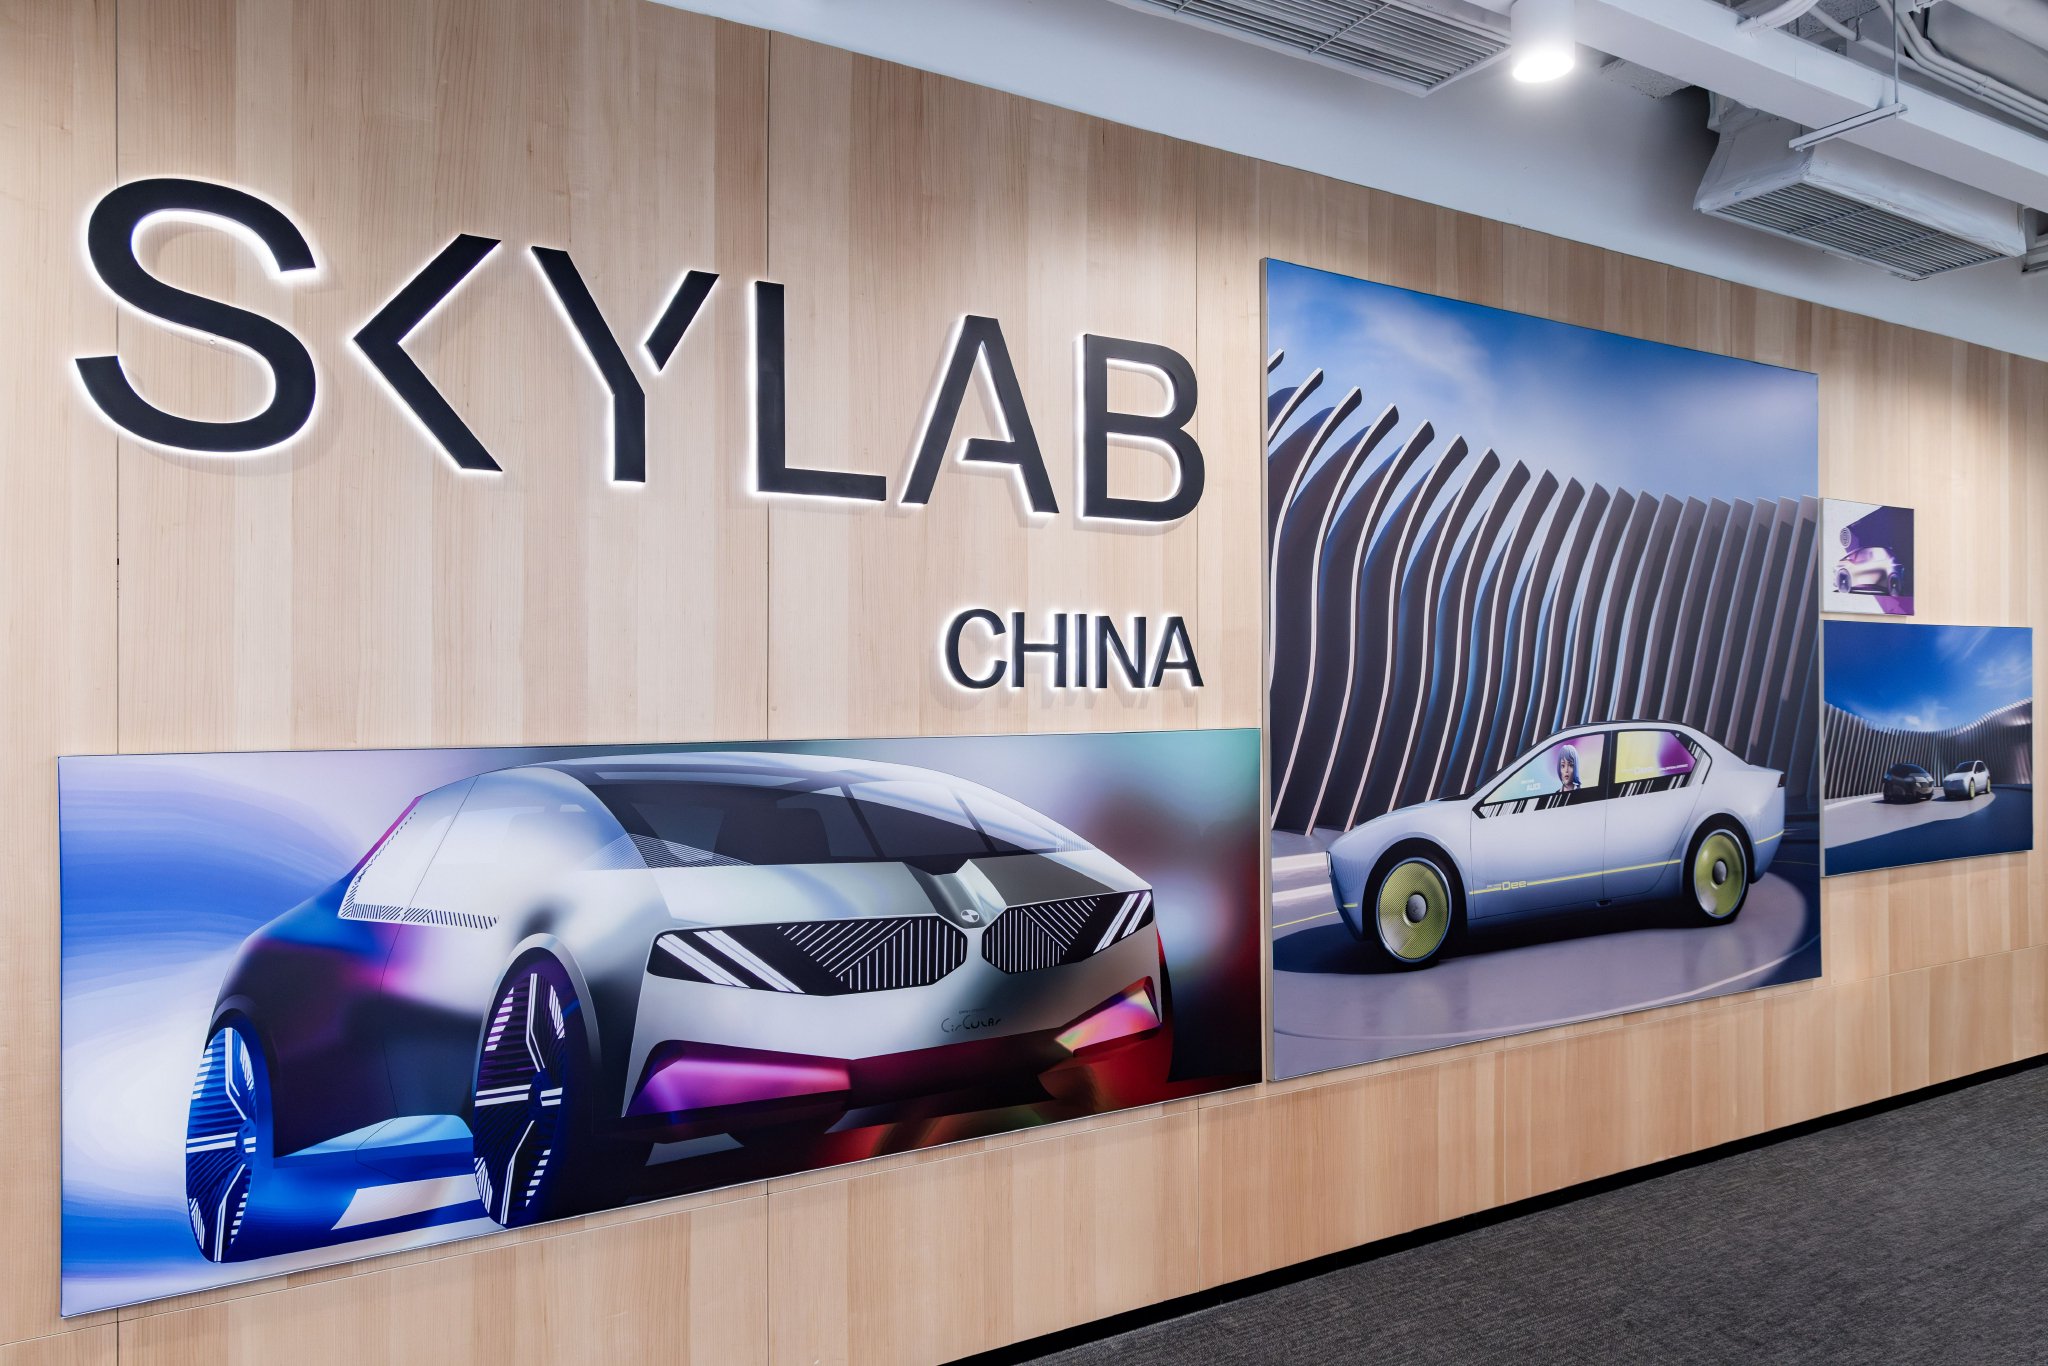 2024北京车展：宝马推进新世代车型开发 将于2026年国产